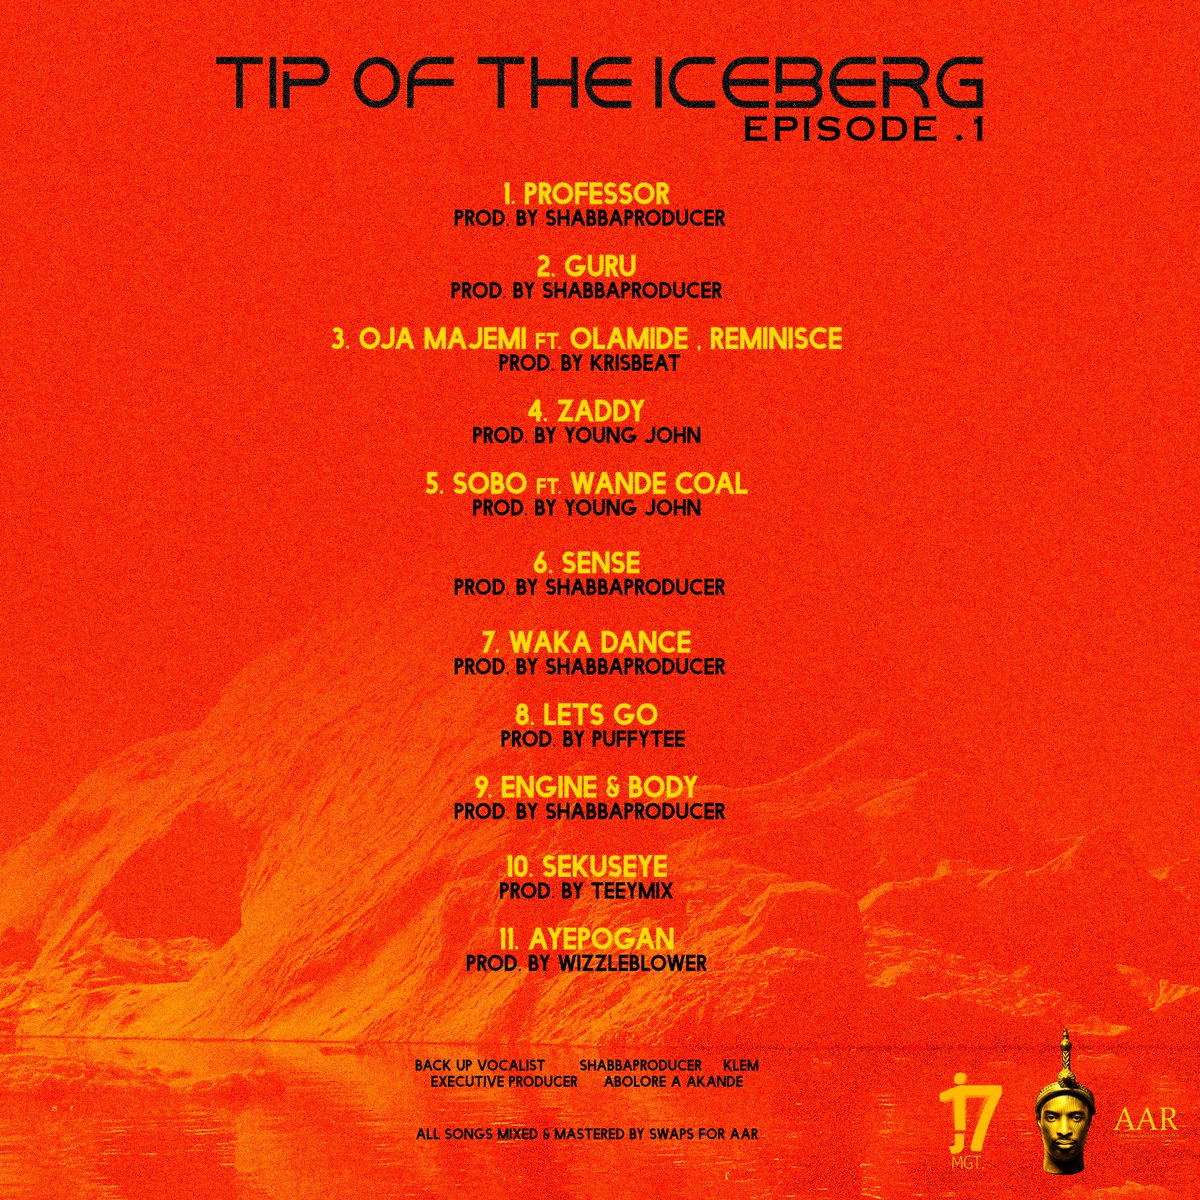 9ice - Tip of The Iceberg Episode 1. (Alapomeji)